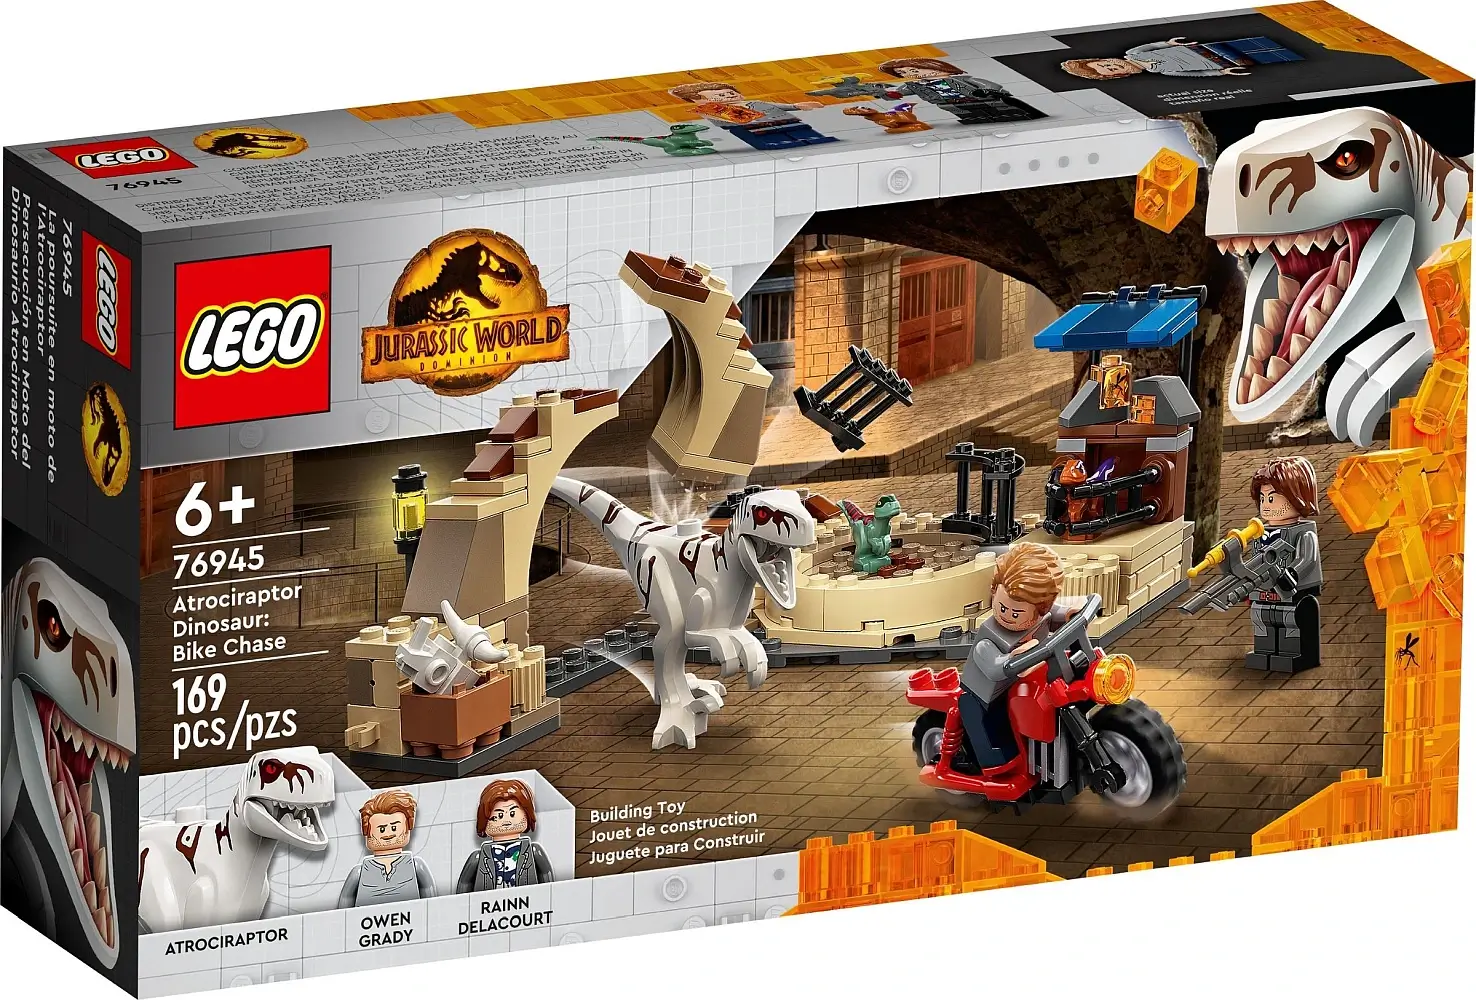 Pudełko zestawu 76945 z serii LEGO® Jurassic World™ – Atrociraptor: pościg na motocyklu